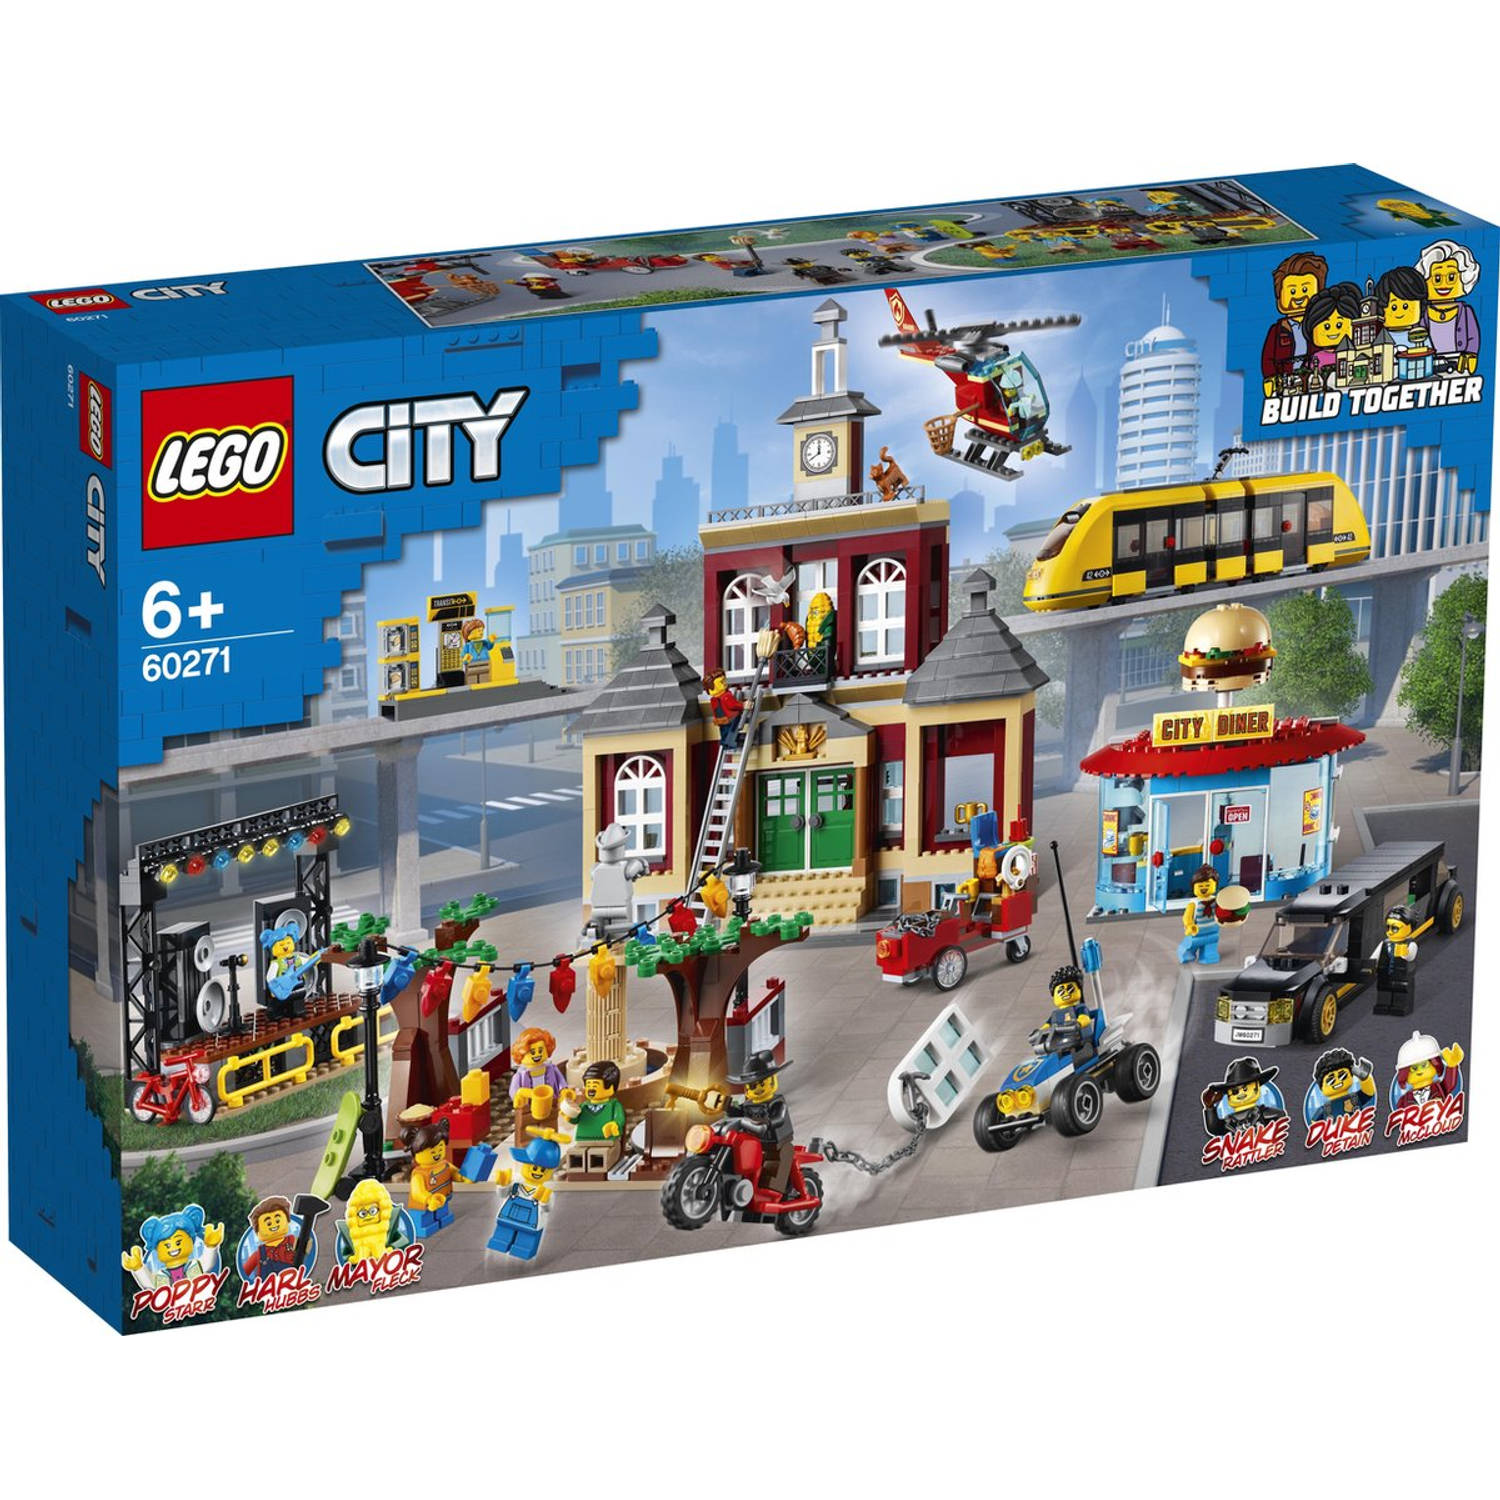 Lego City Marktplein 60271